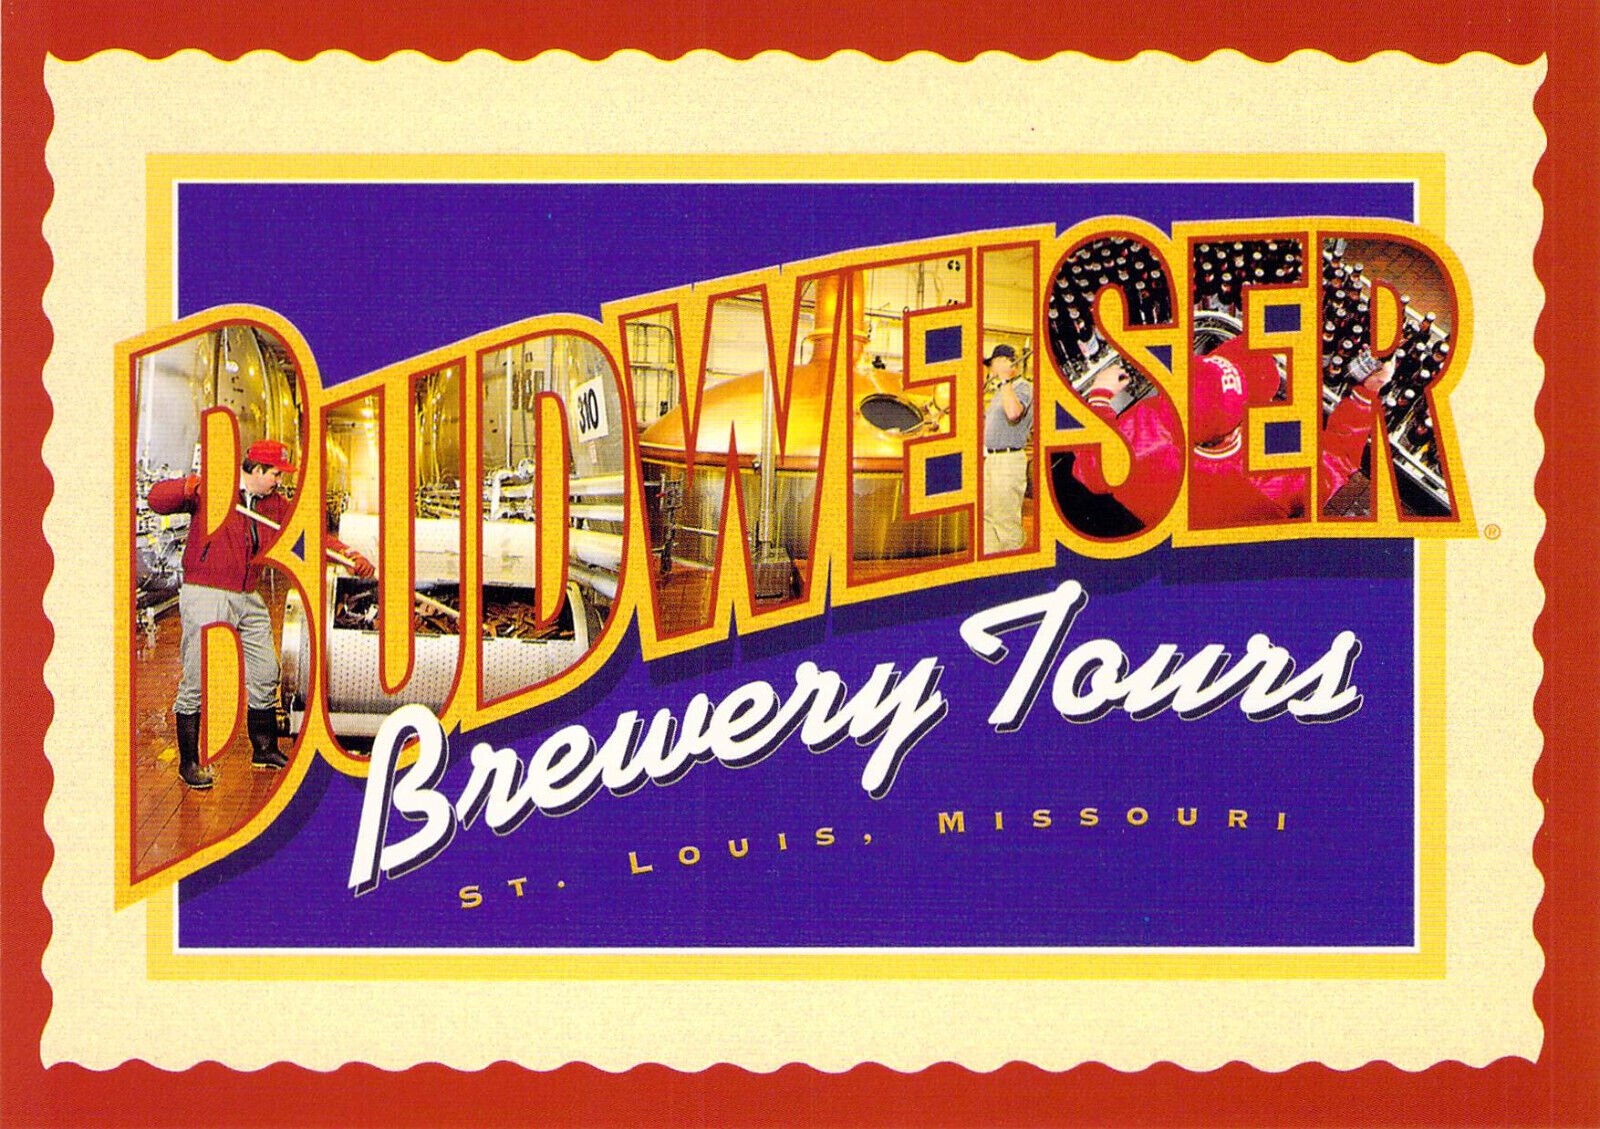 1996 MO St Louis Anheuser Busch Budweiser Brewery Tour AD  4x6 postcard CT23